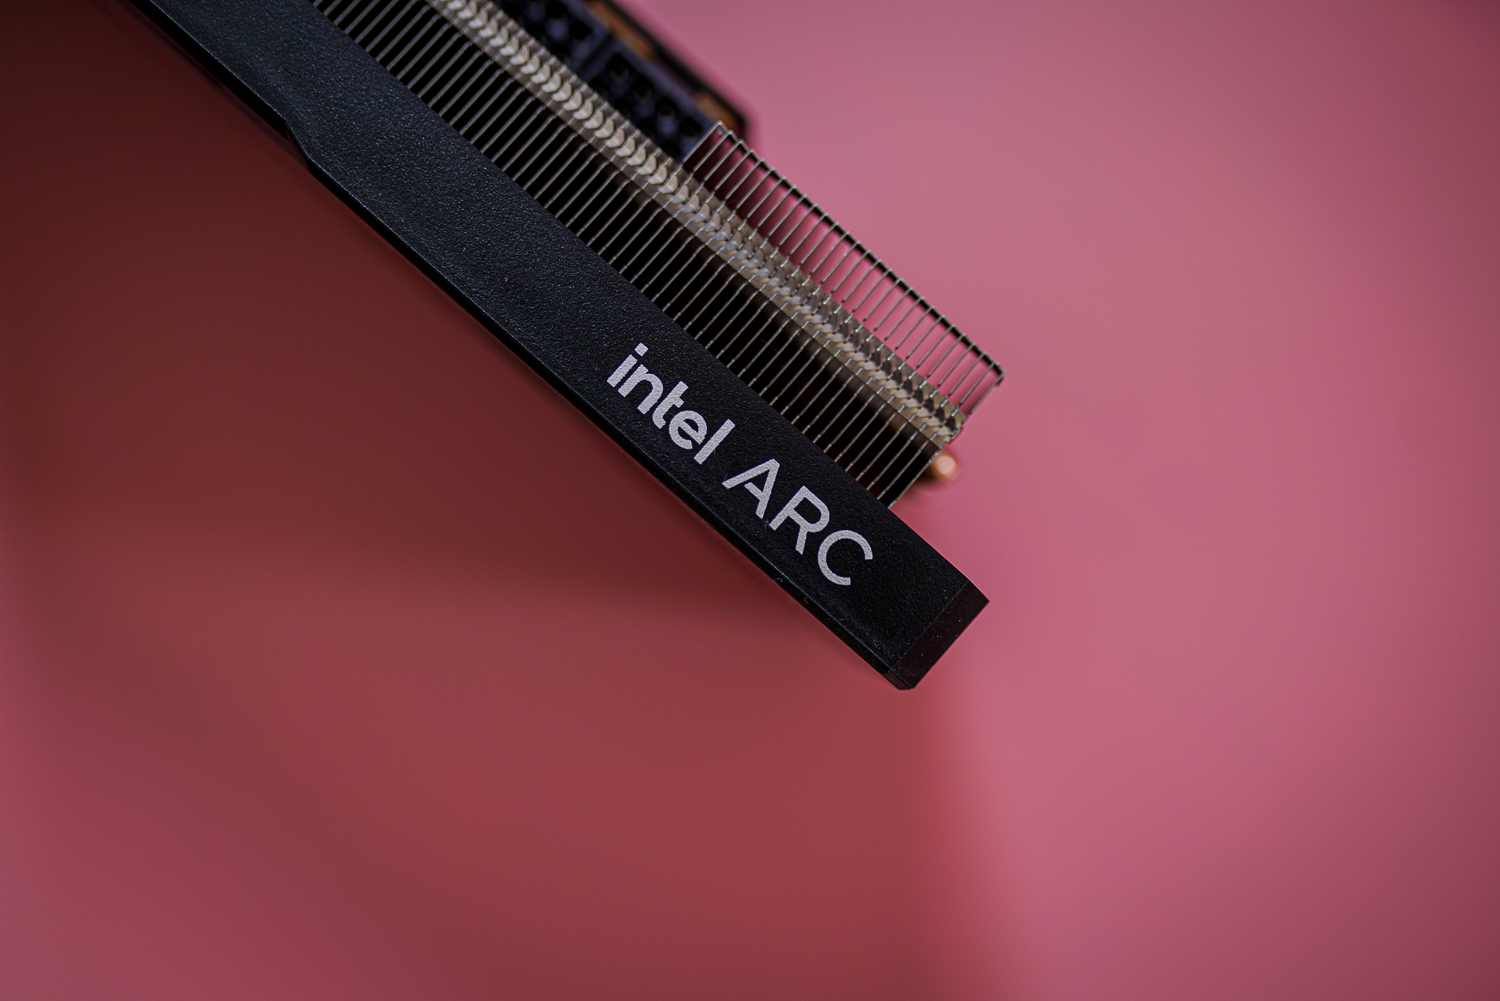 Intel Arc logo on the Arc A580 GPU.